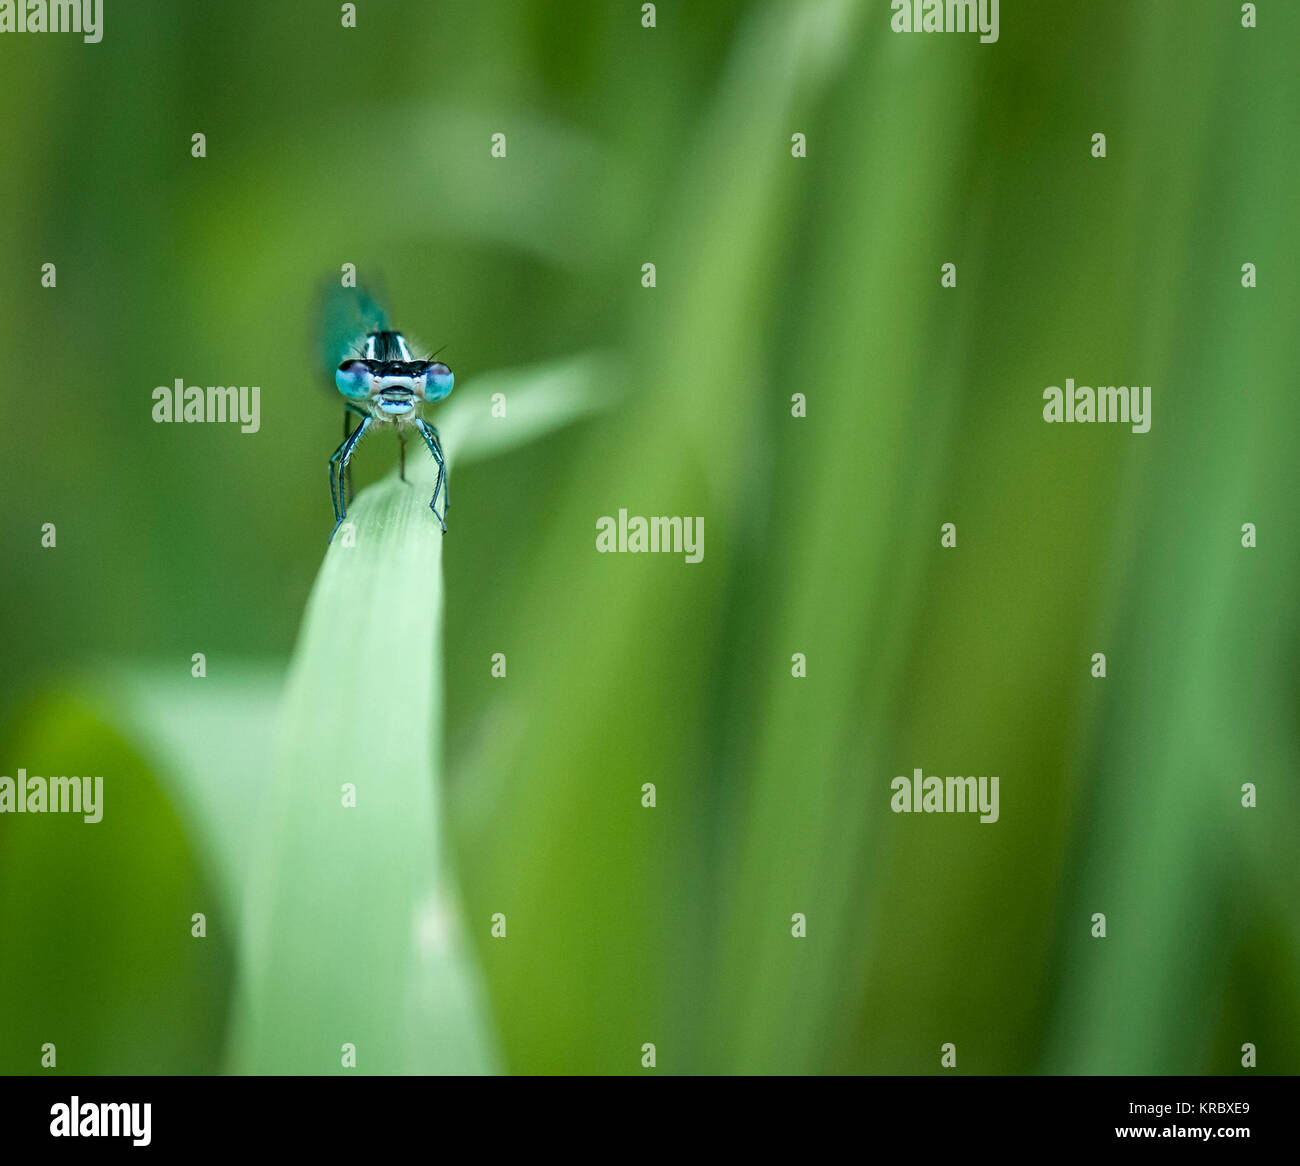 Una macro immagine di un comune Damselfly blu, Enallagma cyathigerum, guardare dritto verso la fotocamera. Maggio 2015 Foto Stock